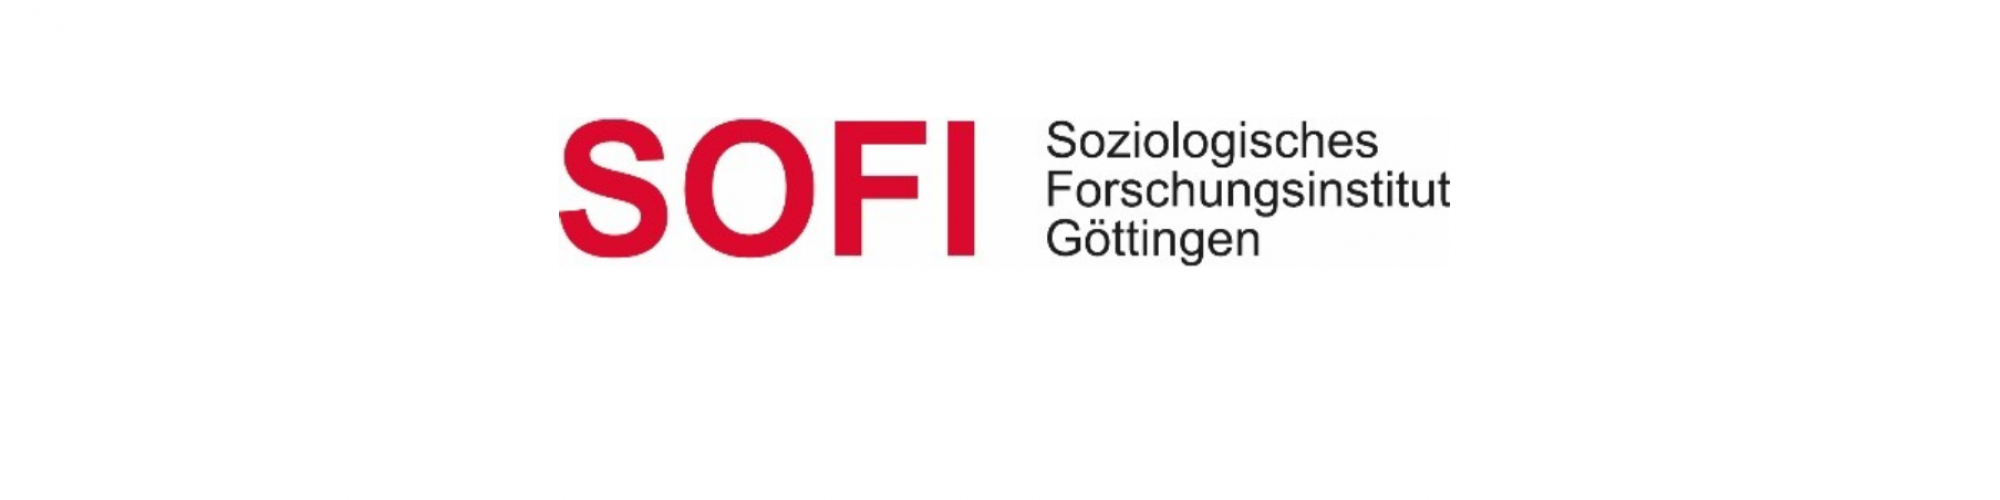 Soziologisches Forschungsinstitut Göttingen